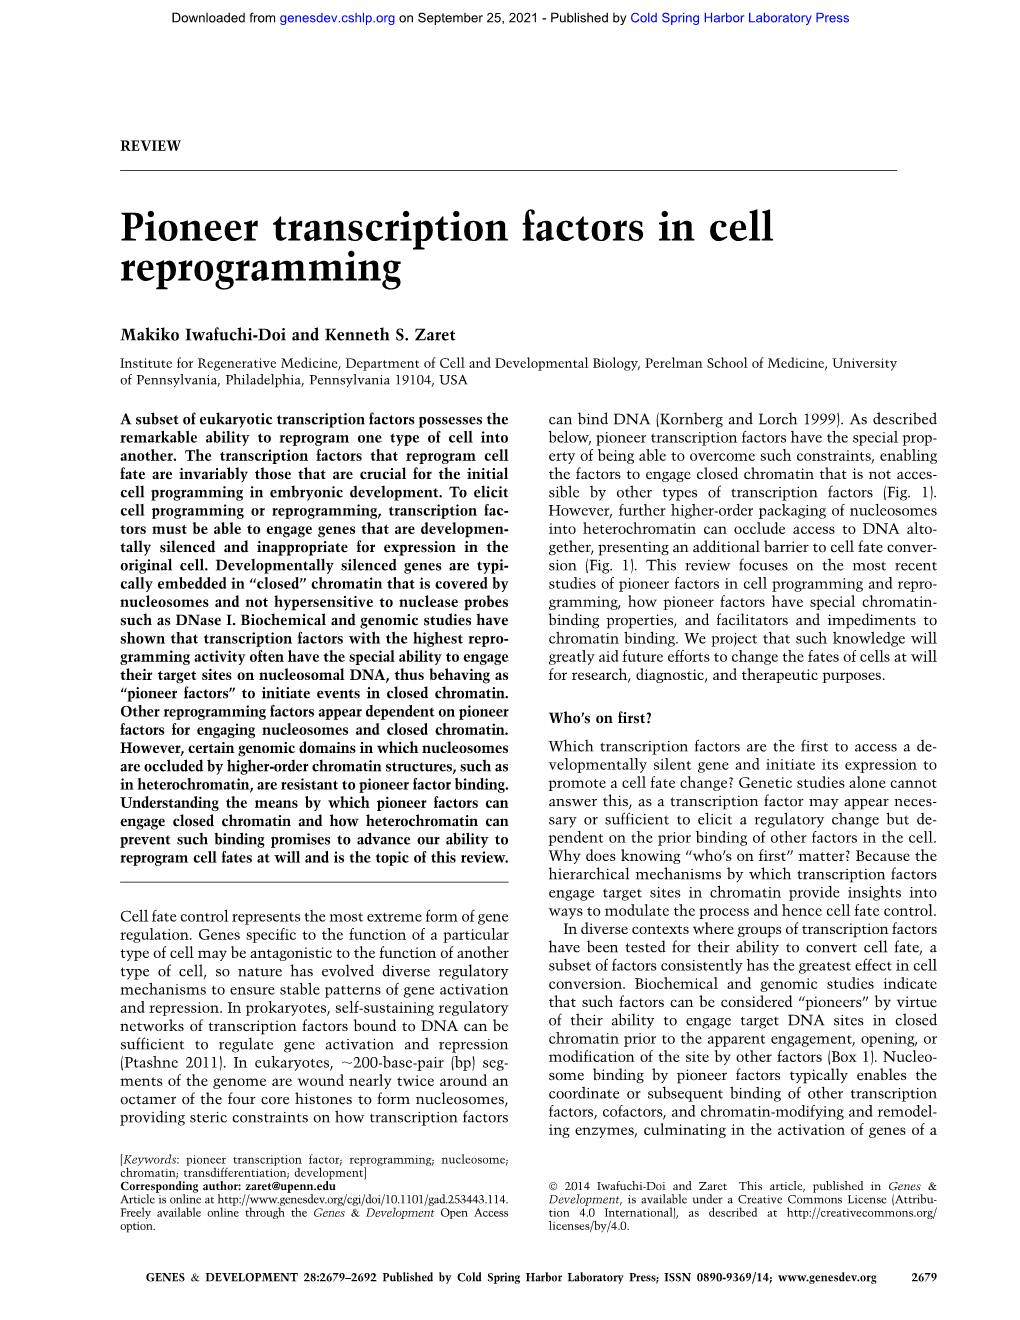 Pioneer Transcription Factors in Cell Reprogramming